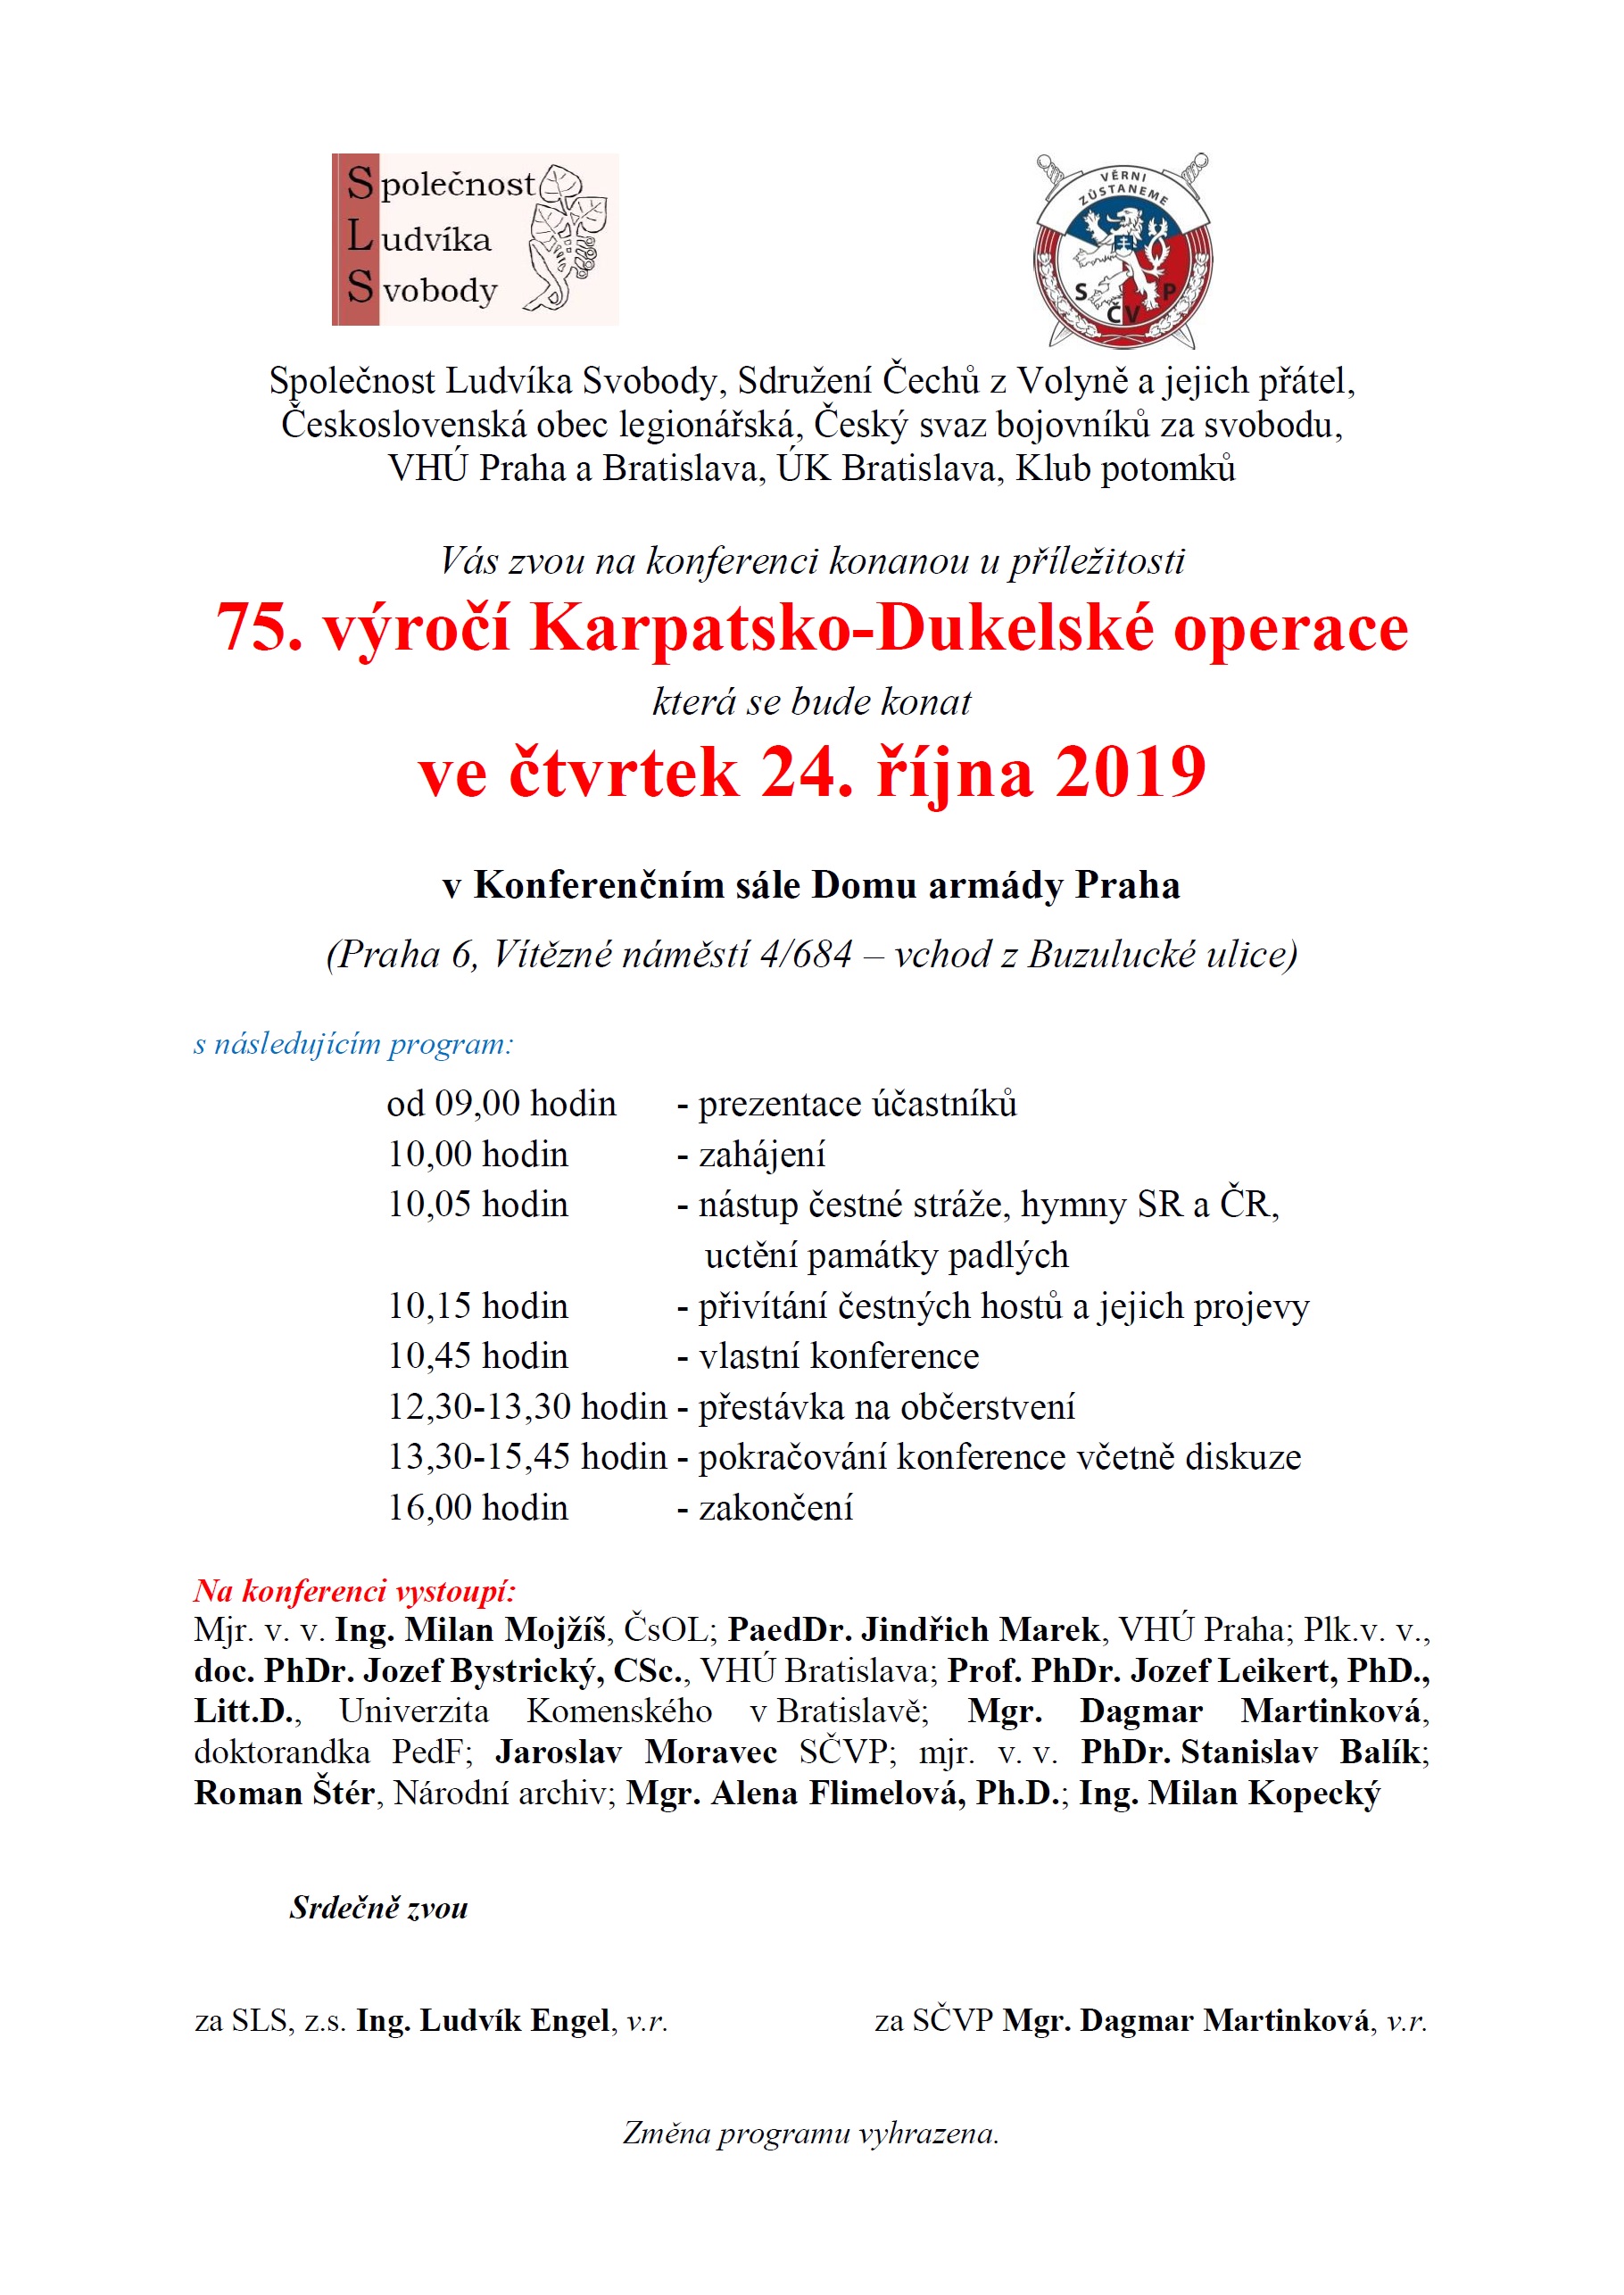 2019 10 24 Konference 75. výročí Karpatsko dukelské operace